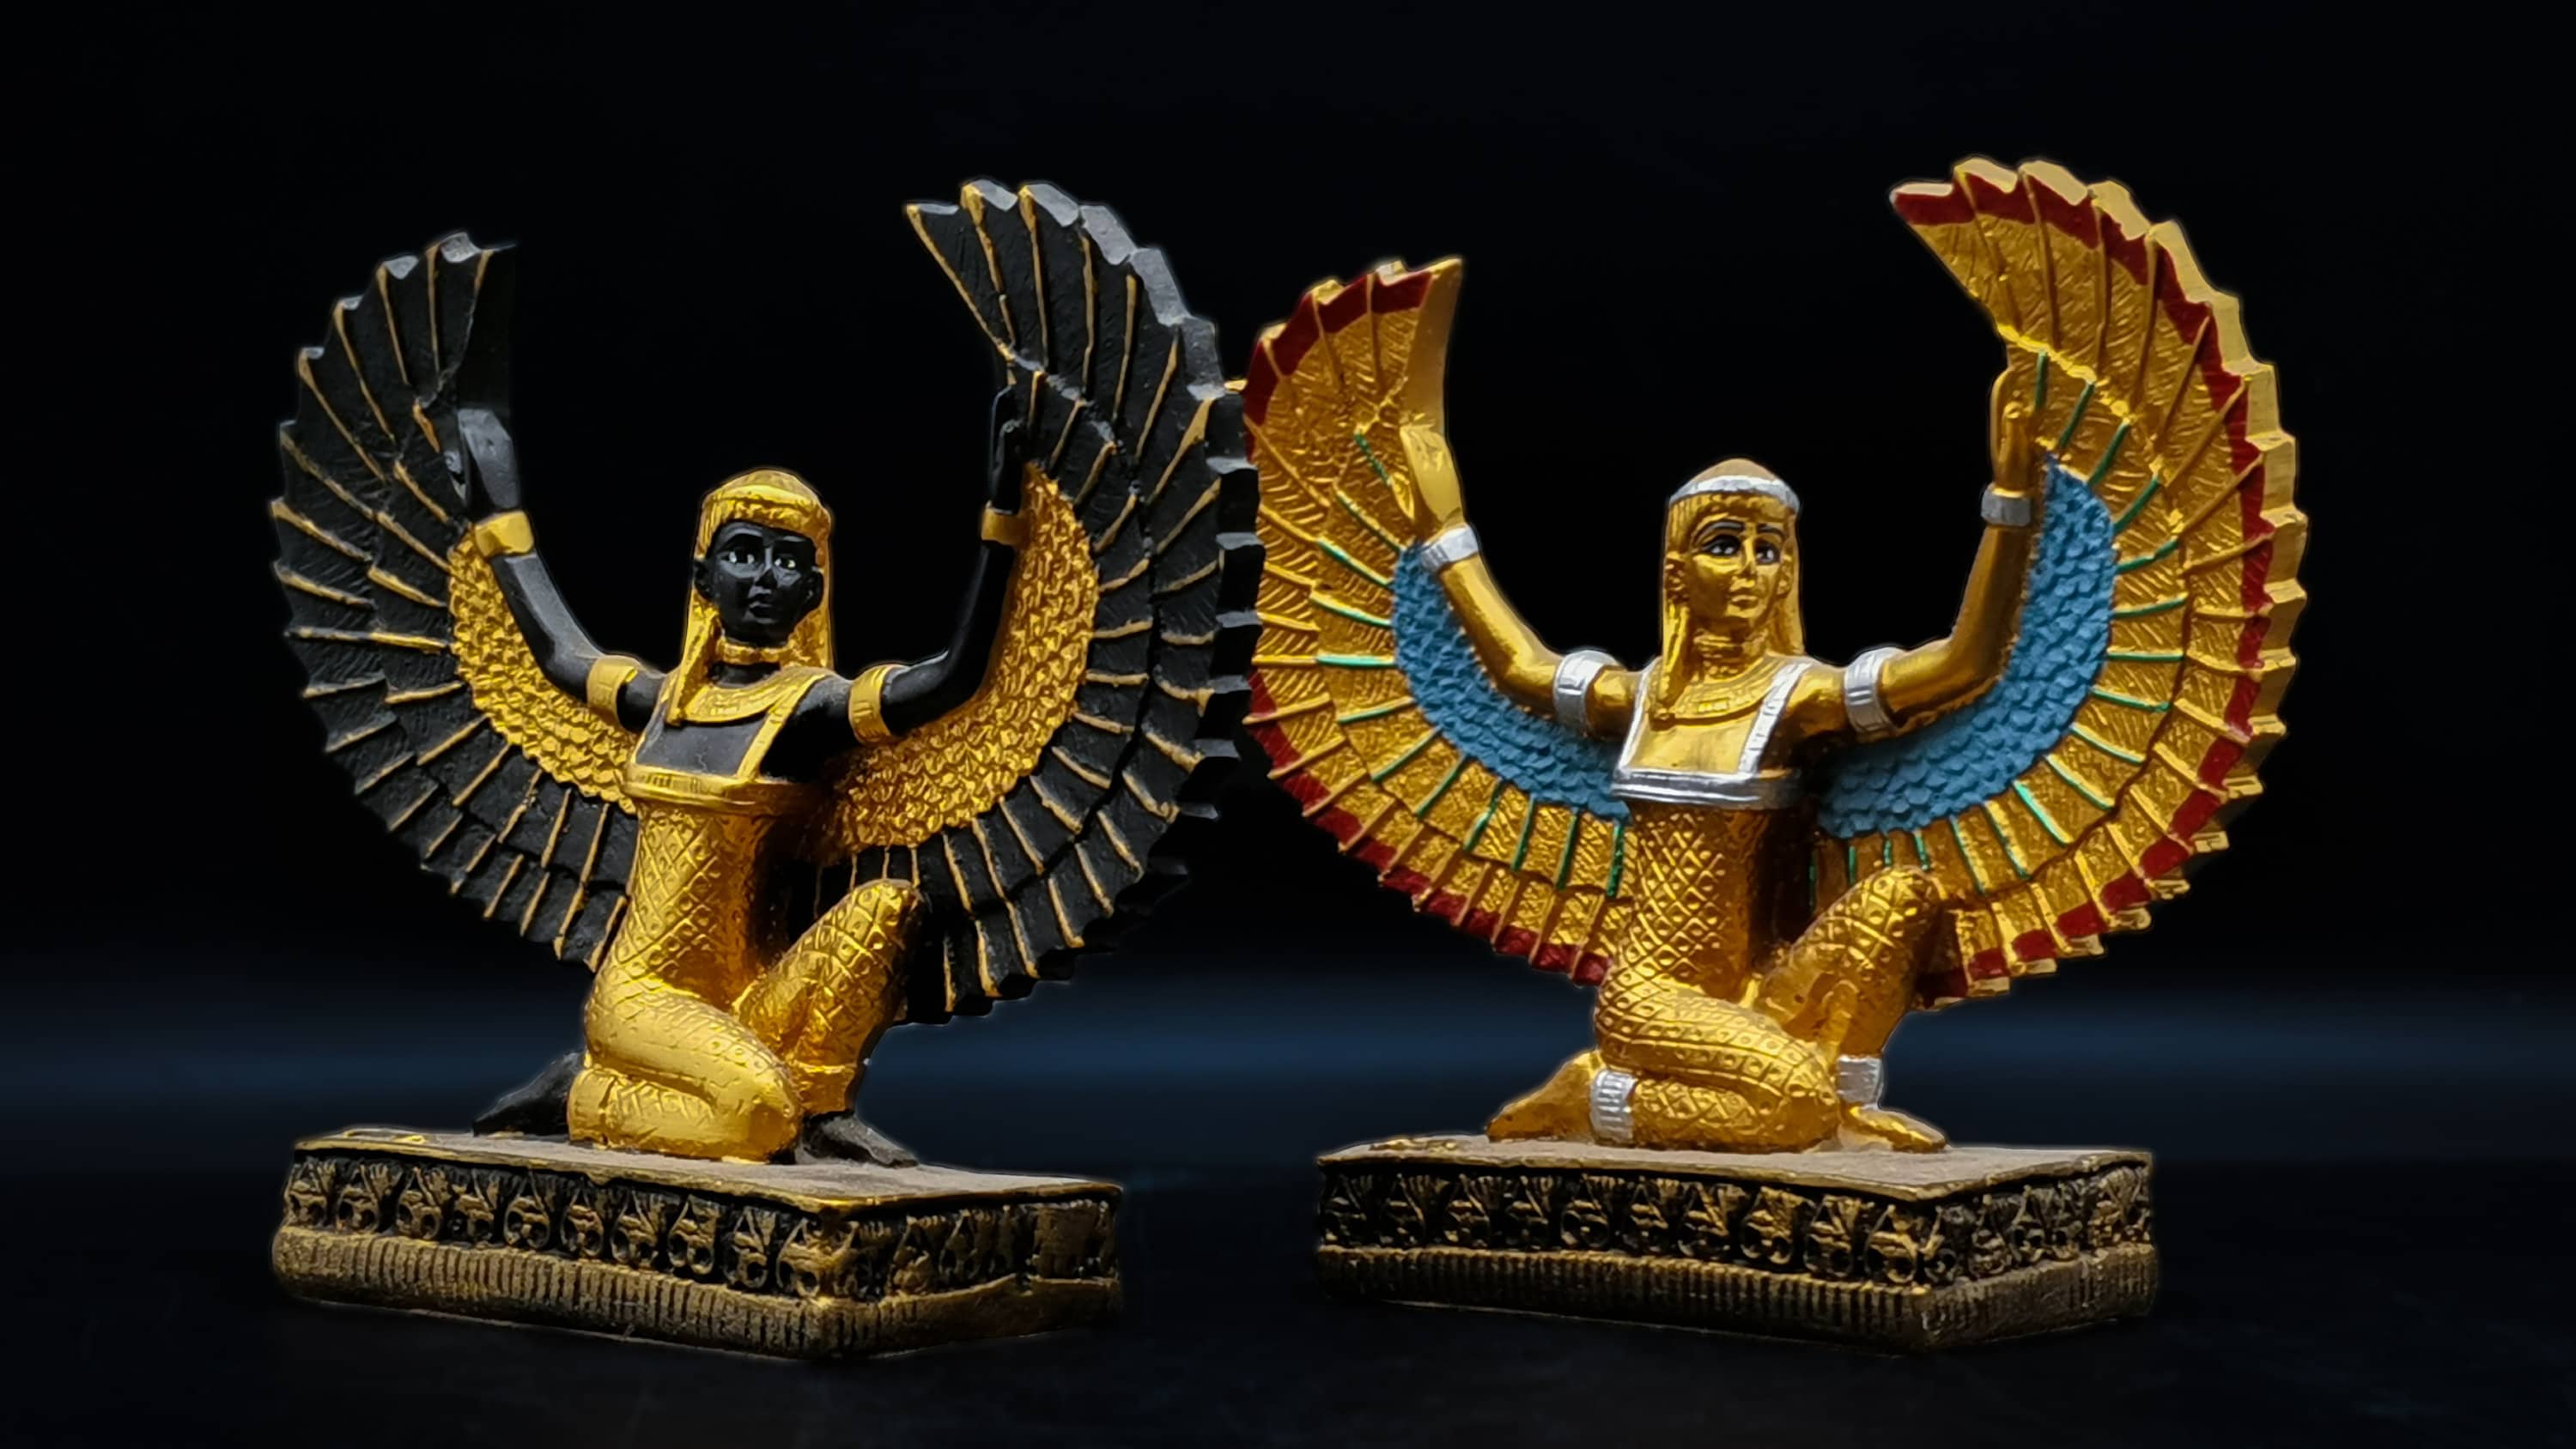 Flying Wings Mythology Of Ancient Egypt Unique Egyptian Etsy